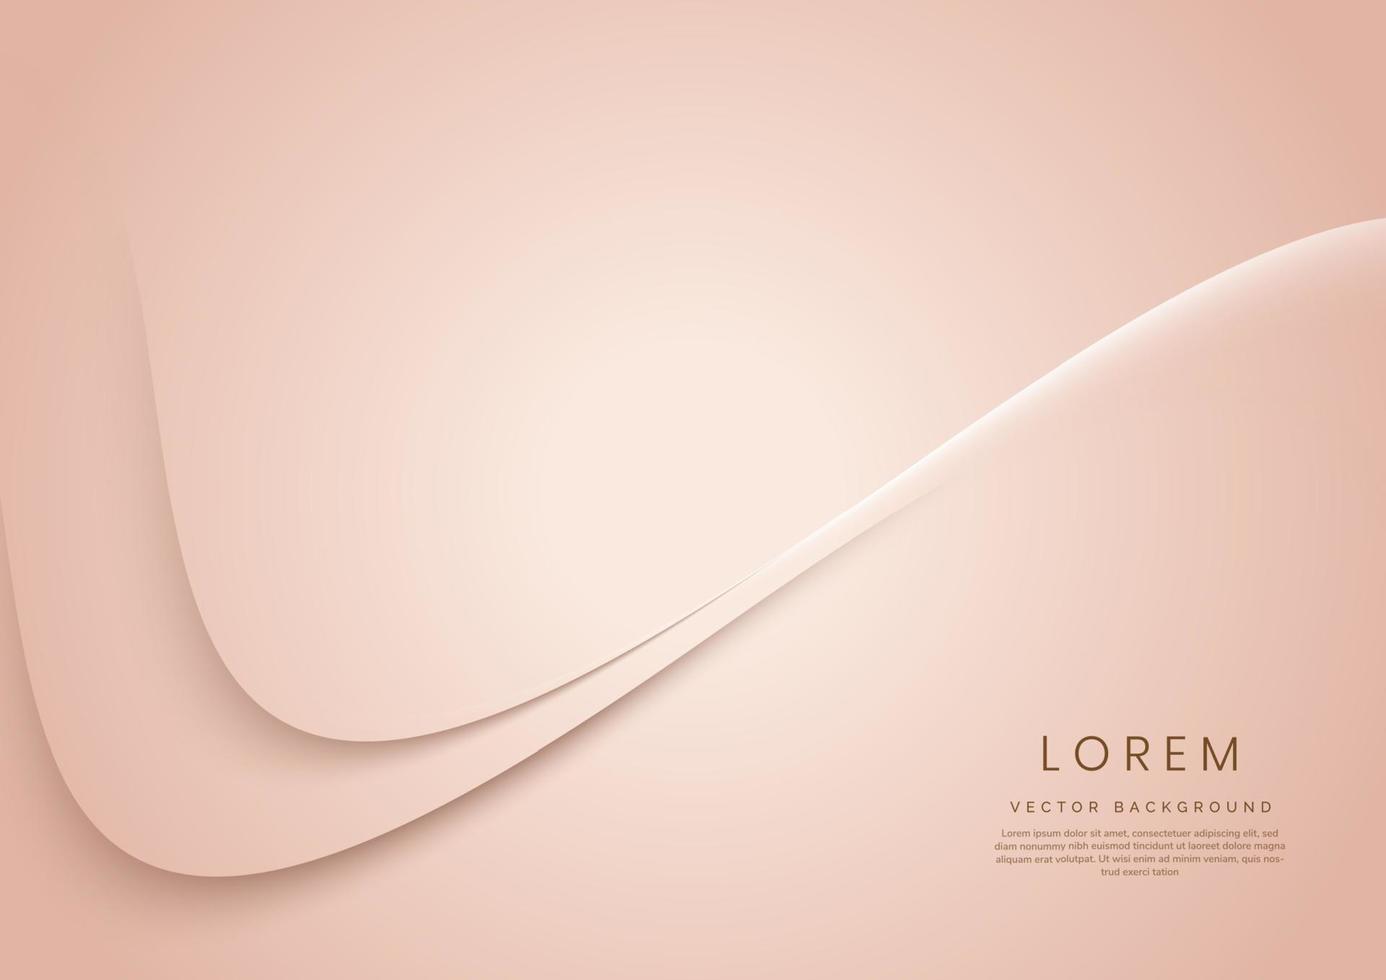 abstracte 3d rose goud gebogen achtergrond met kopie ruimte voor tekst. luxe stijl sjabloonontwerp. vector